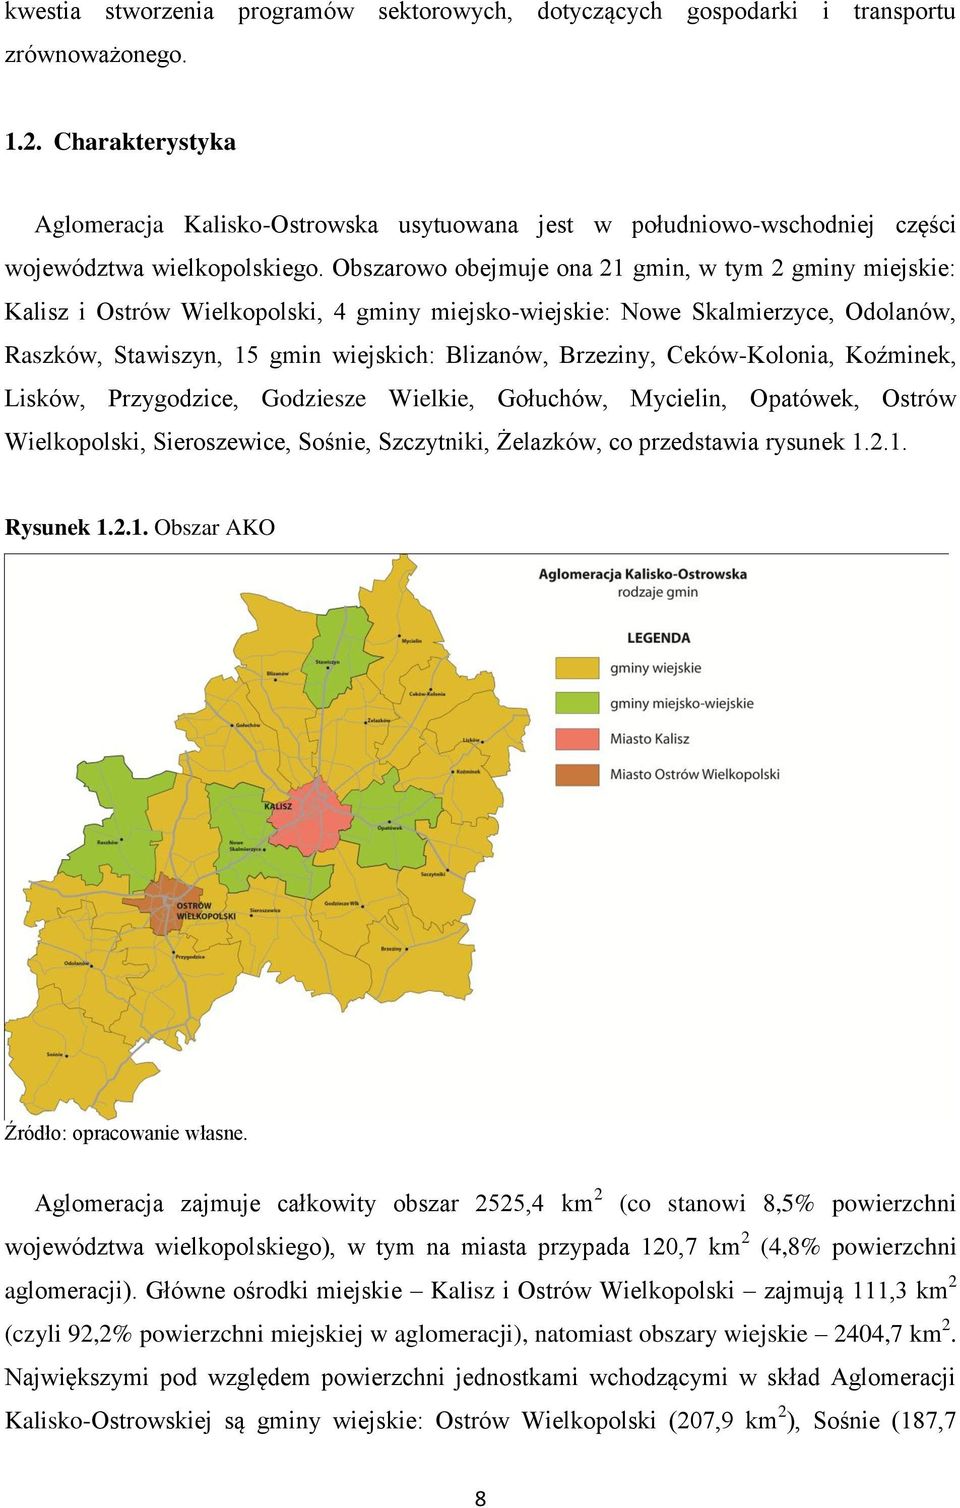 Obszarowo obejmuje ona 21 gmin, w tym 2 gminy miejskie: Kalisz i Ostrów Wielkopolski, 4 gminy miejsko-wiejskie: Nowe Skalmierzyce, Odolanów, Raszków, Stawiszyn, 15 gmin wiejskich: Blizanów, Brzeziny,